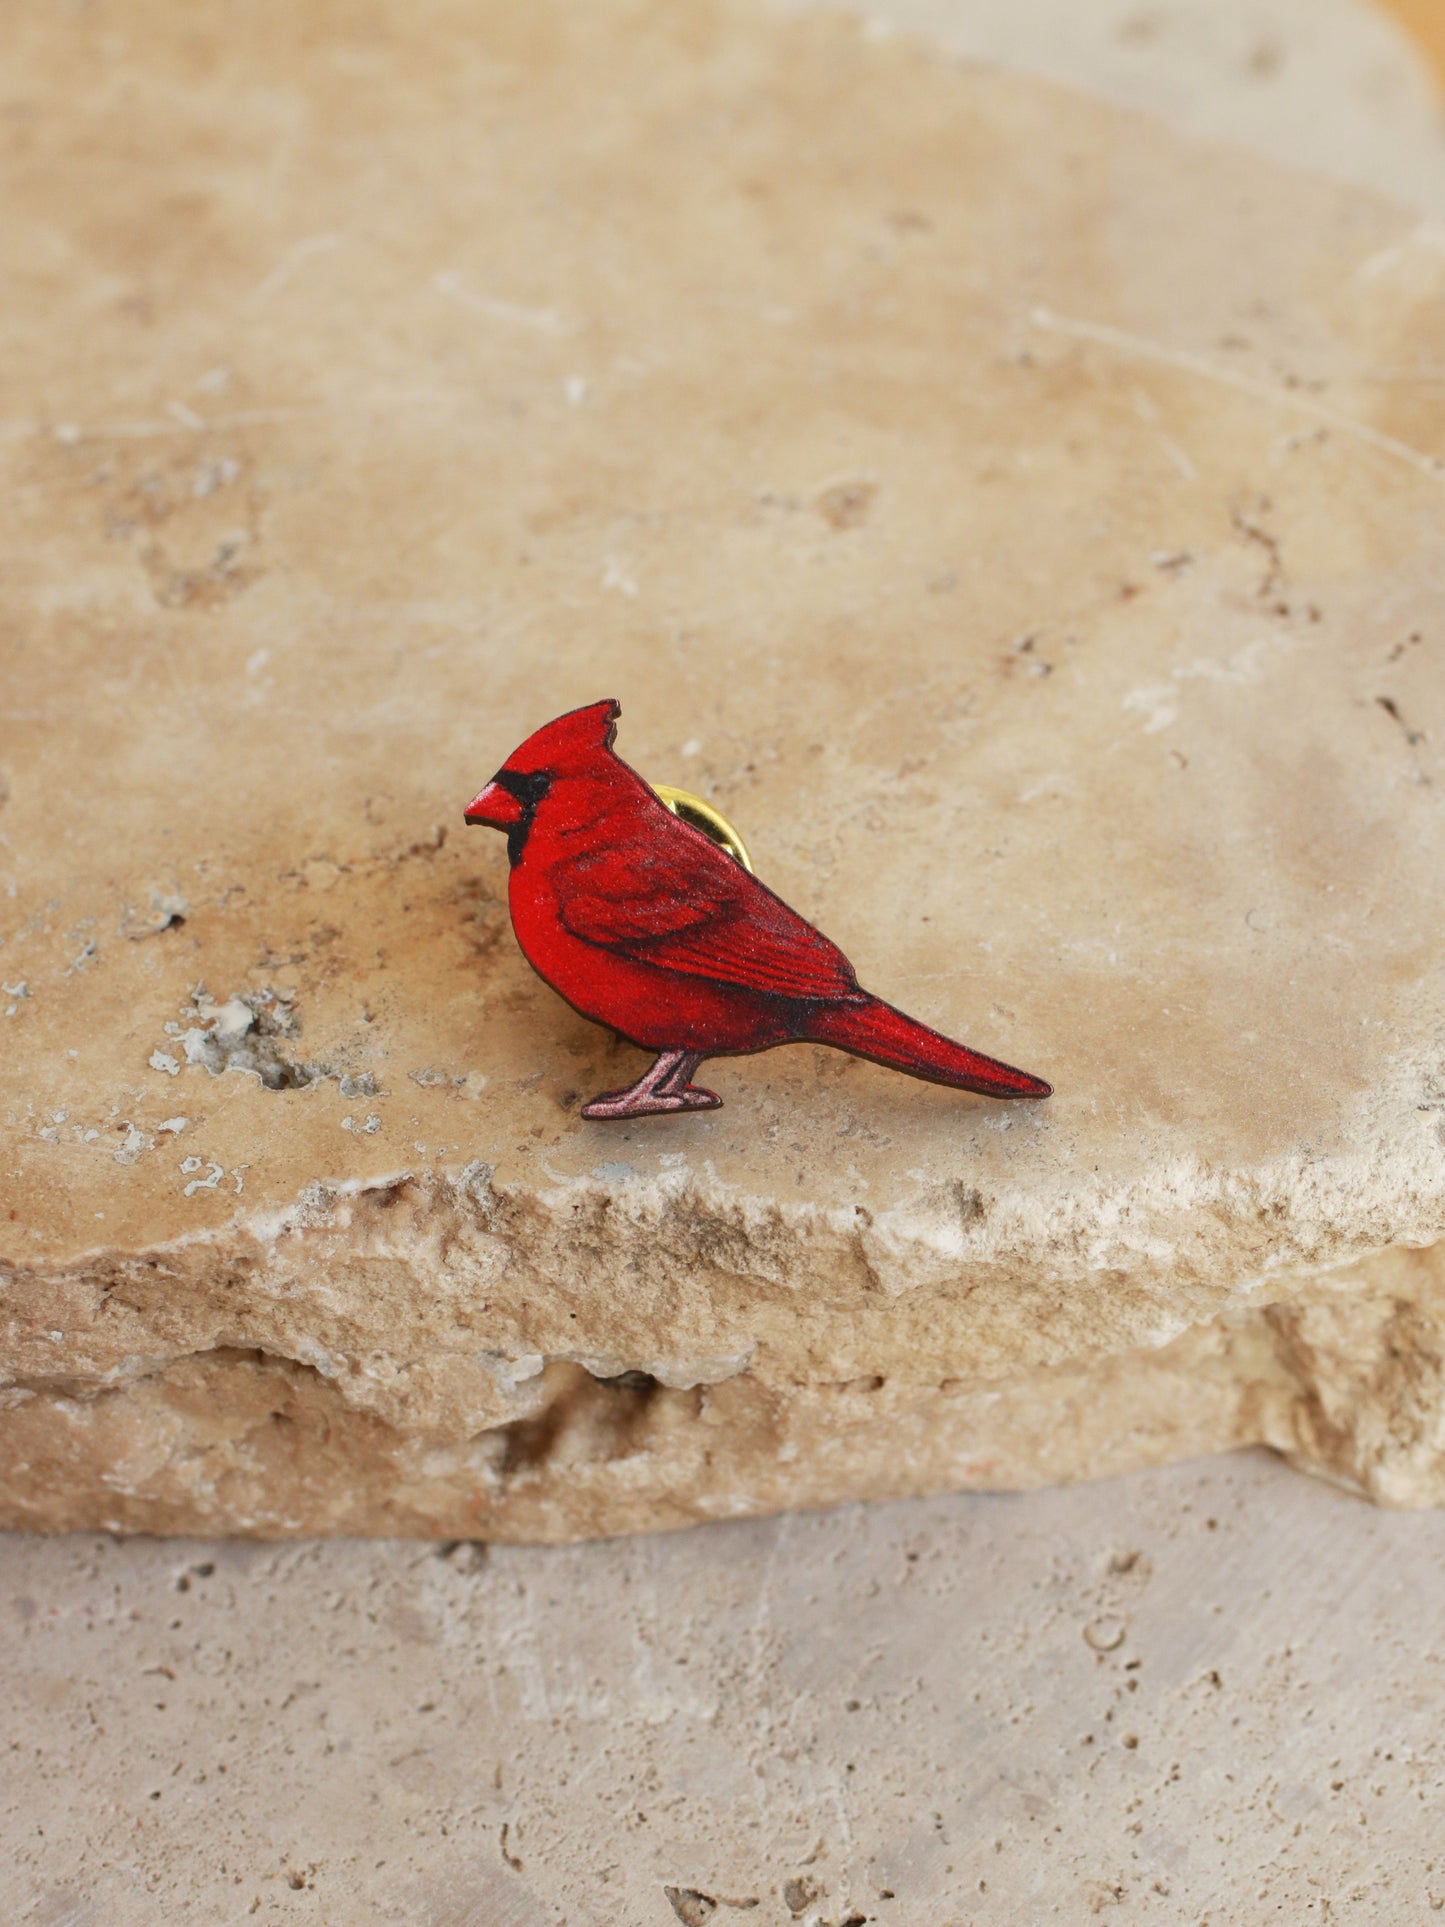 Red cardinal pin - wooden bird pin